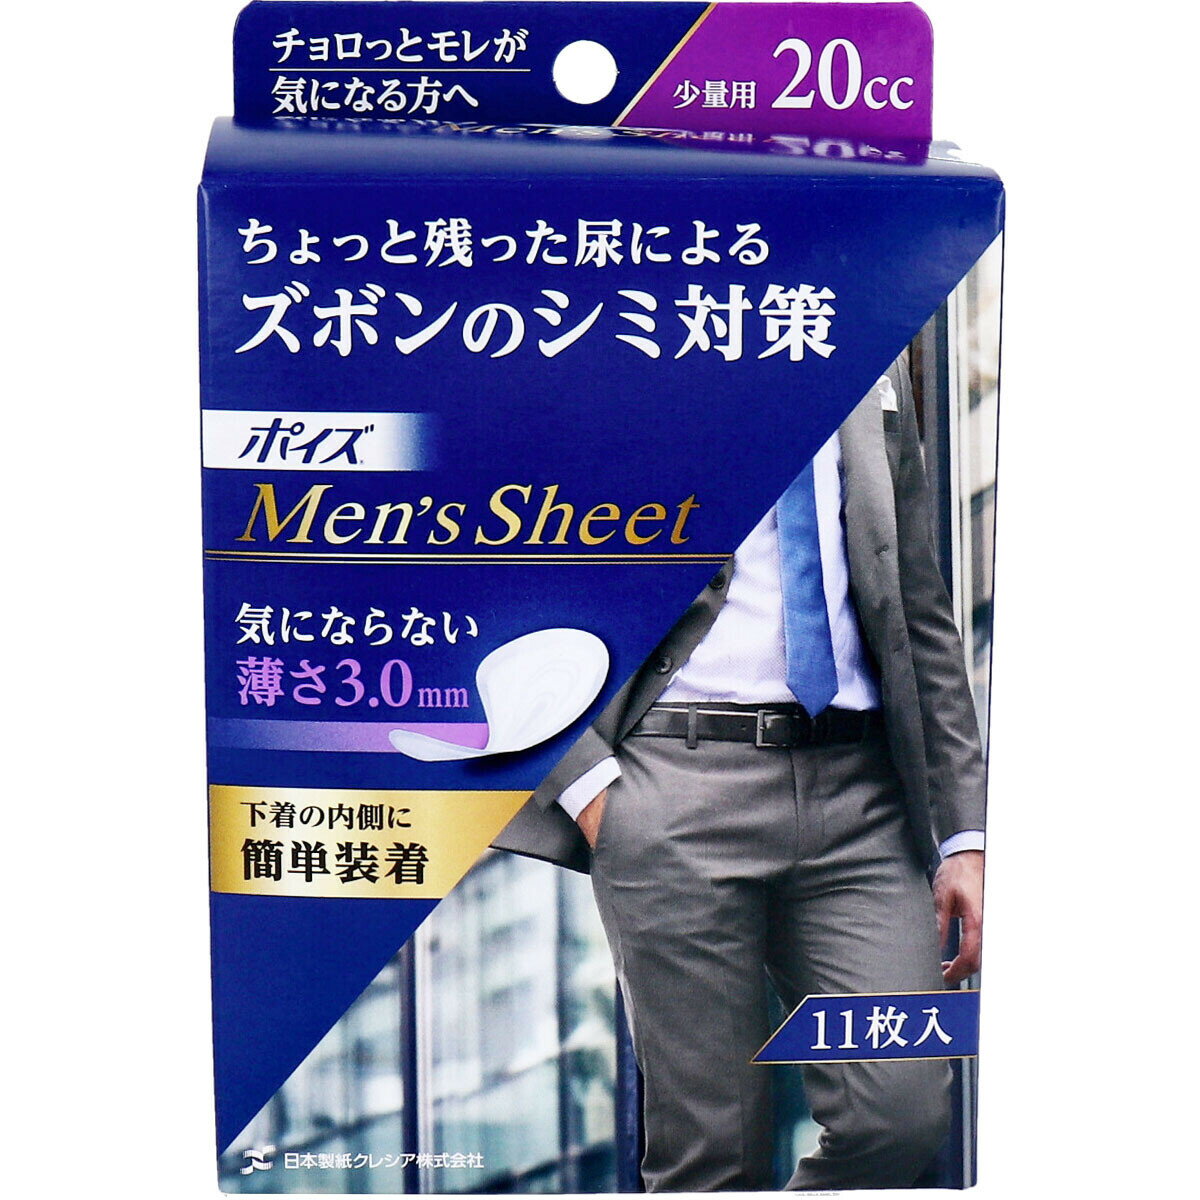 【尿漏れシート】　ポイズ メンズシート 少量用 20cc 11枚入 【1000円ポッキリ】